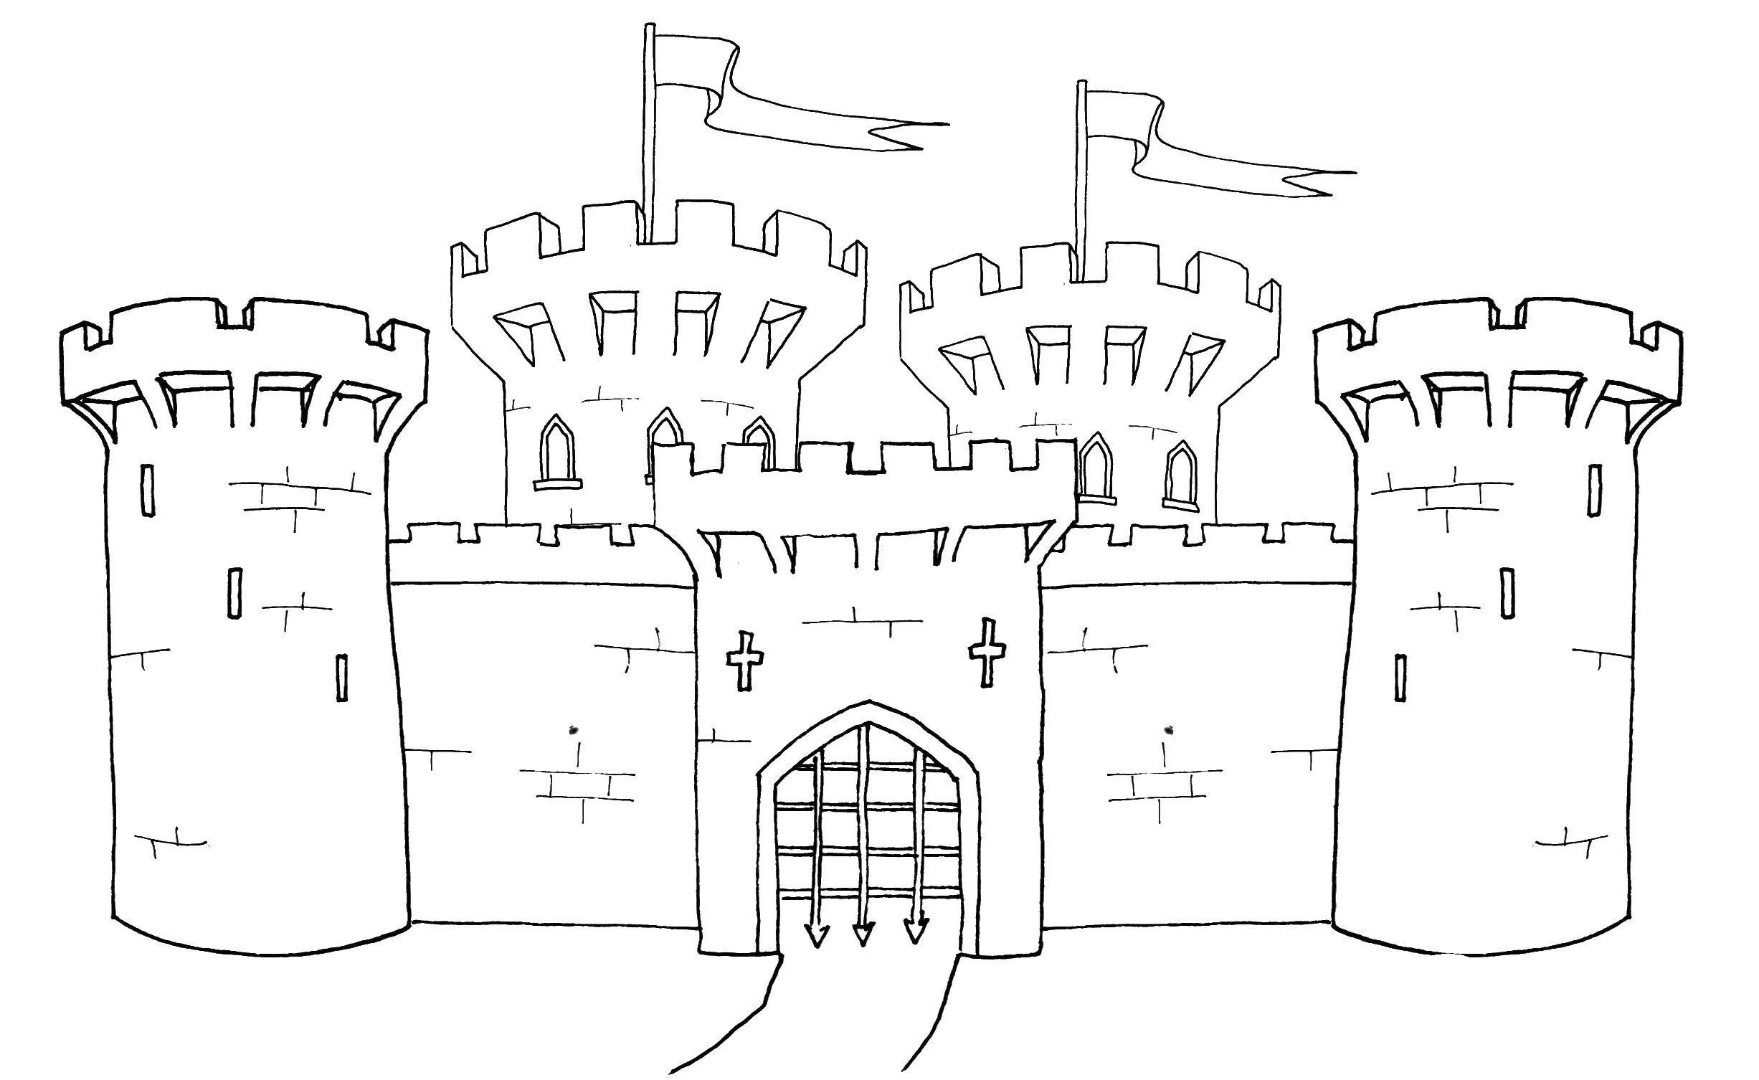 Рисунок замка средневековья